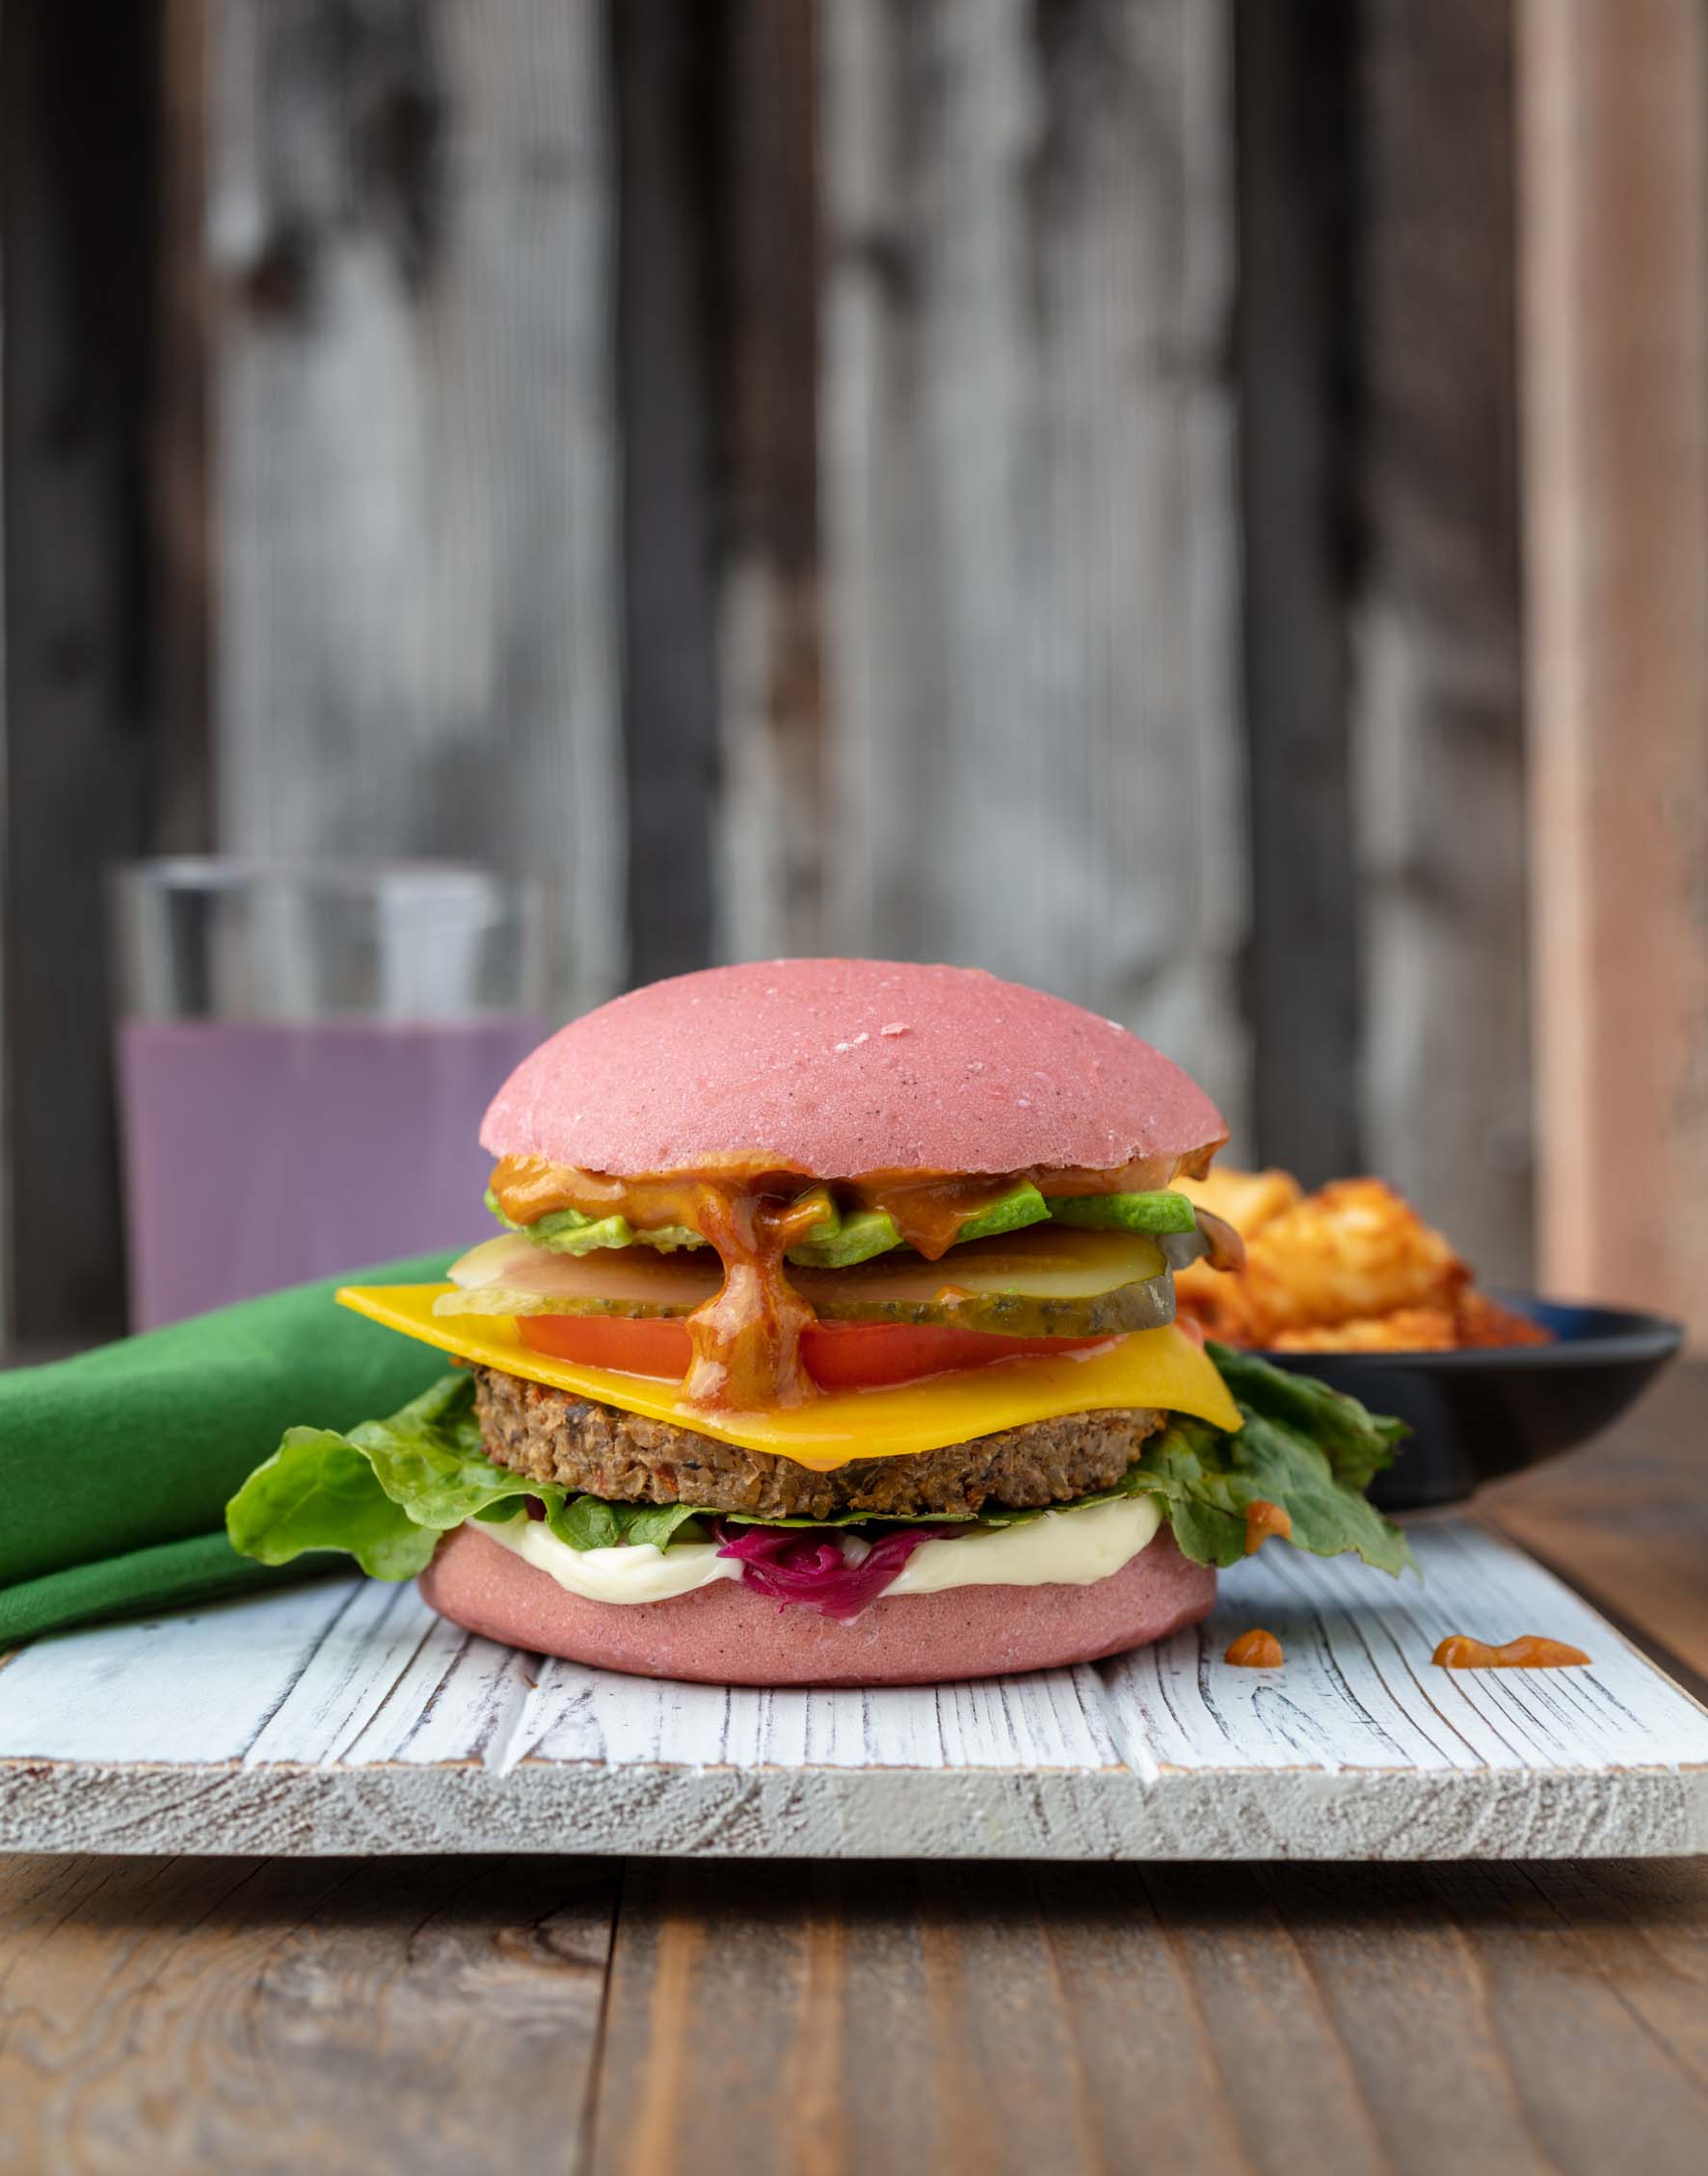 a loaded vegan burger on a pink bun